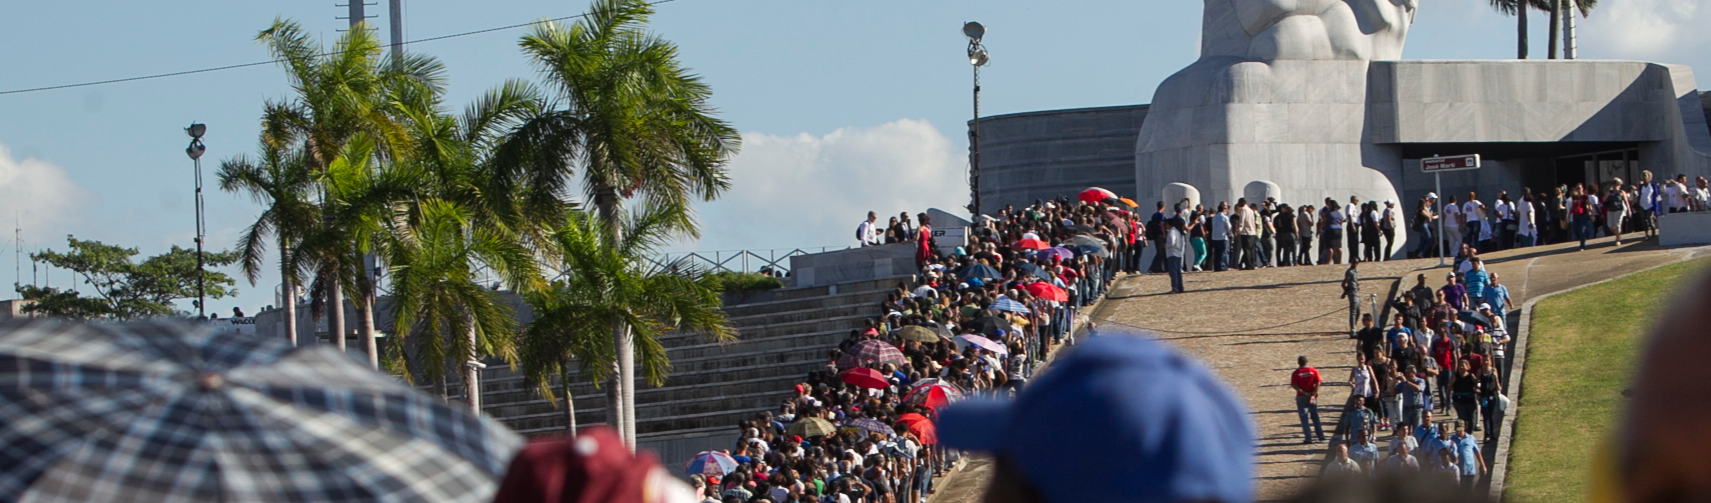 Cuba tem o melhor índice de desenvolvimento sustentável do mundo, diz pesquisa